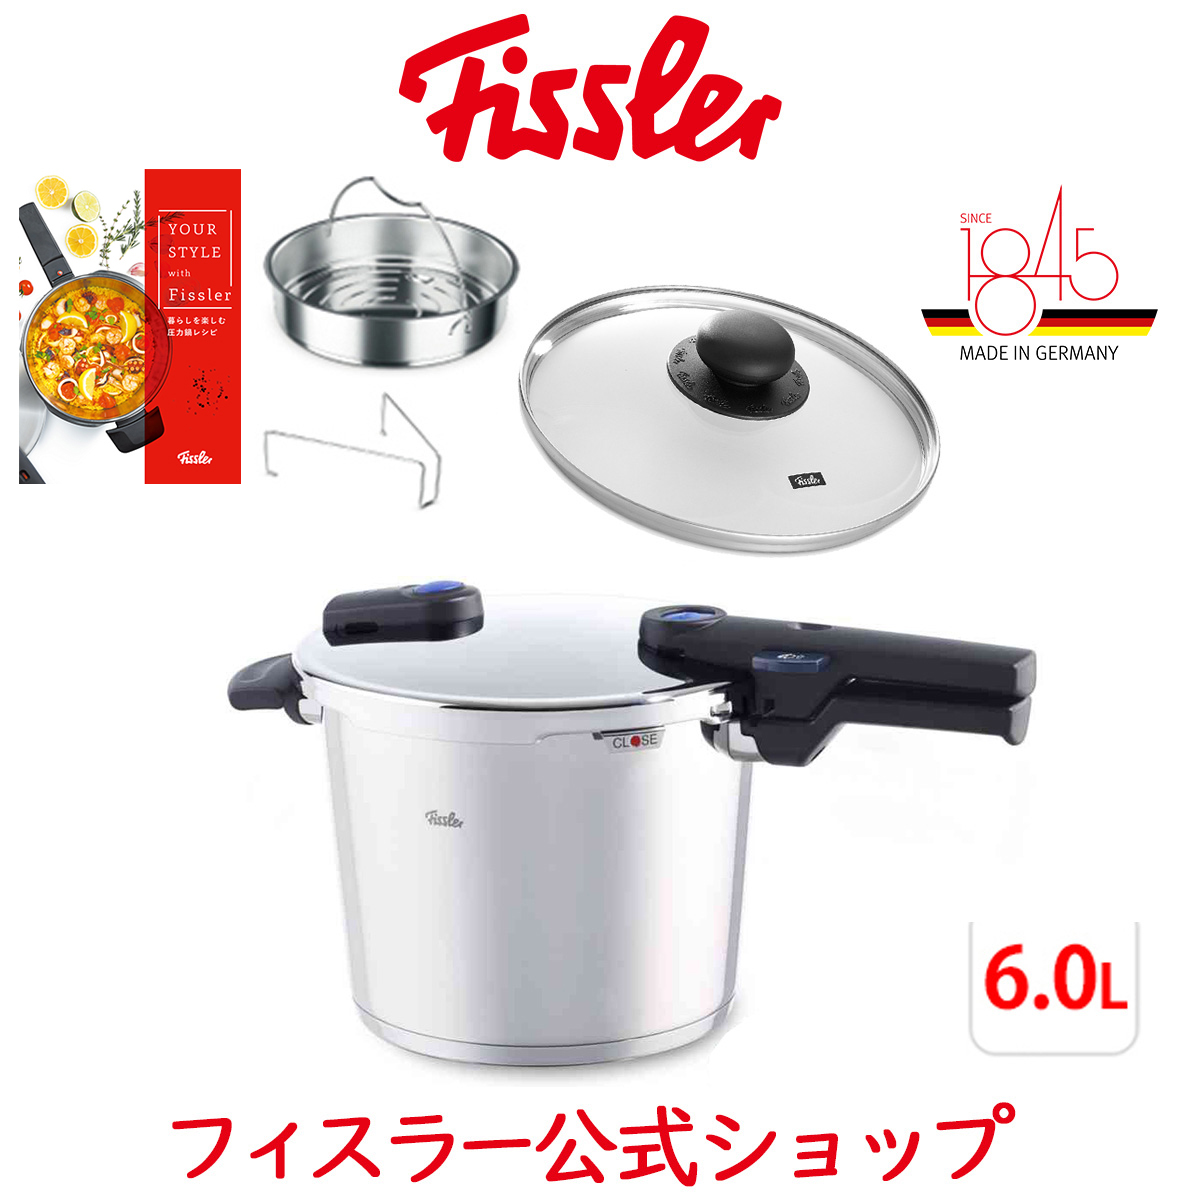 超安い品質 ビタクイックプラス Fissler フィスラー オレンジ [圧力鍋] 6.0L 調理器具